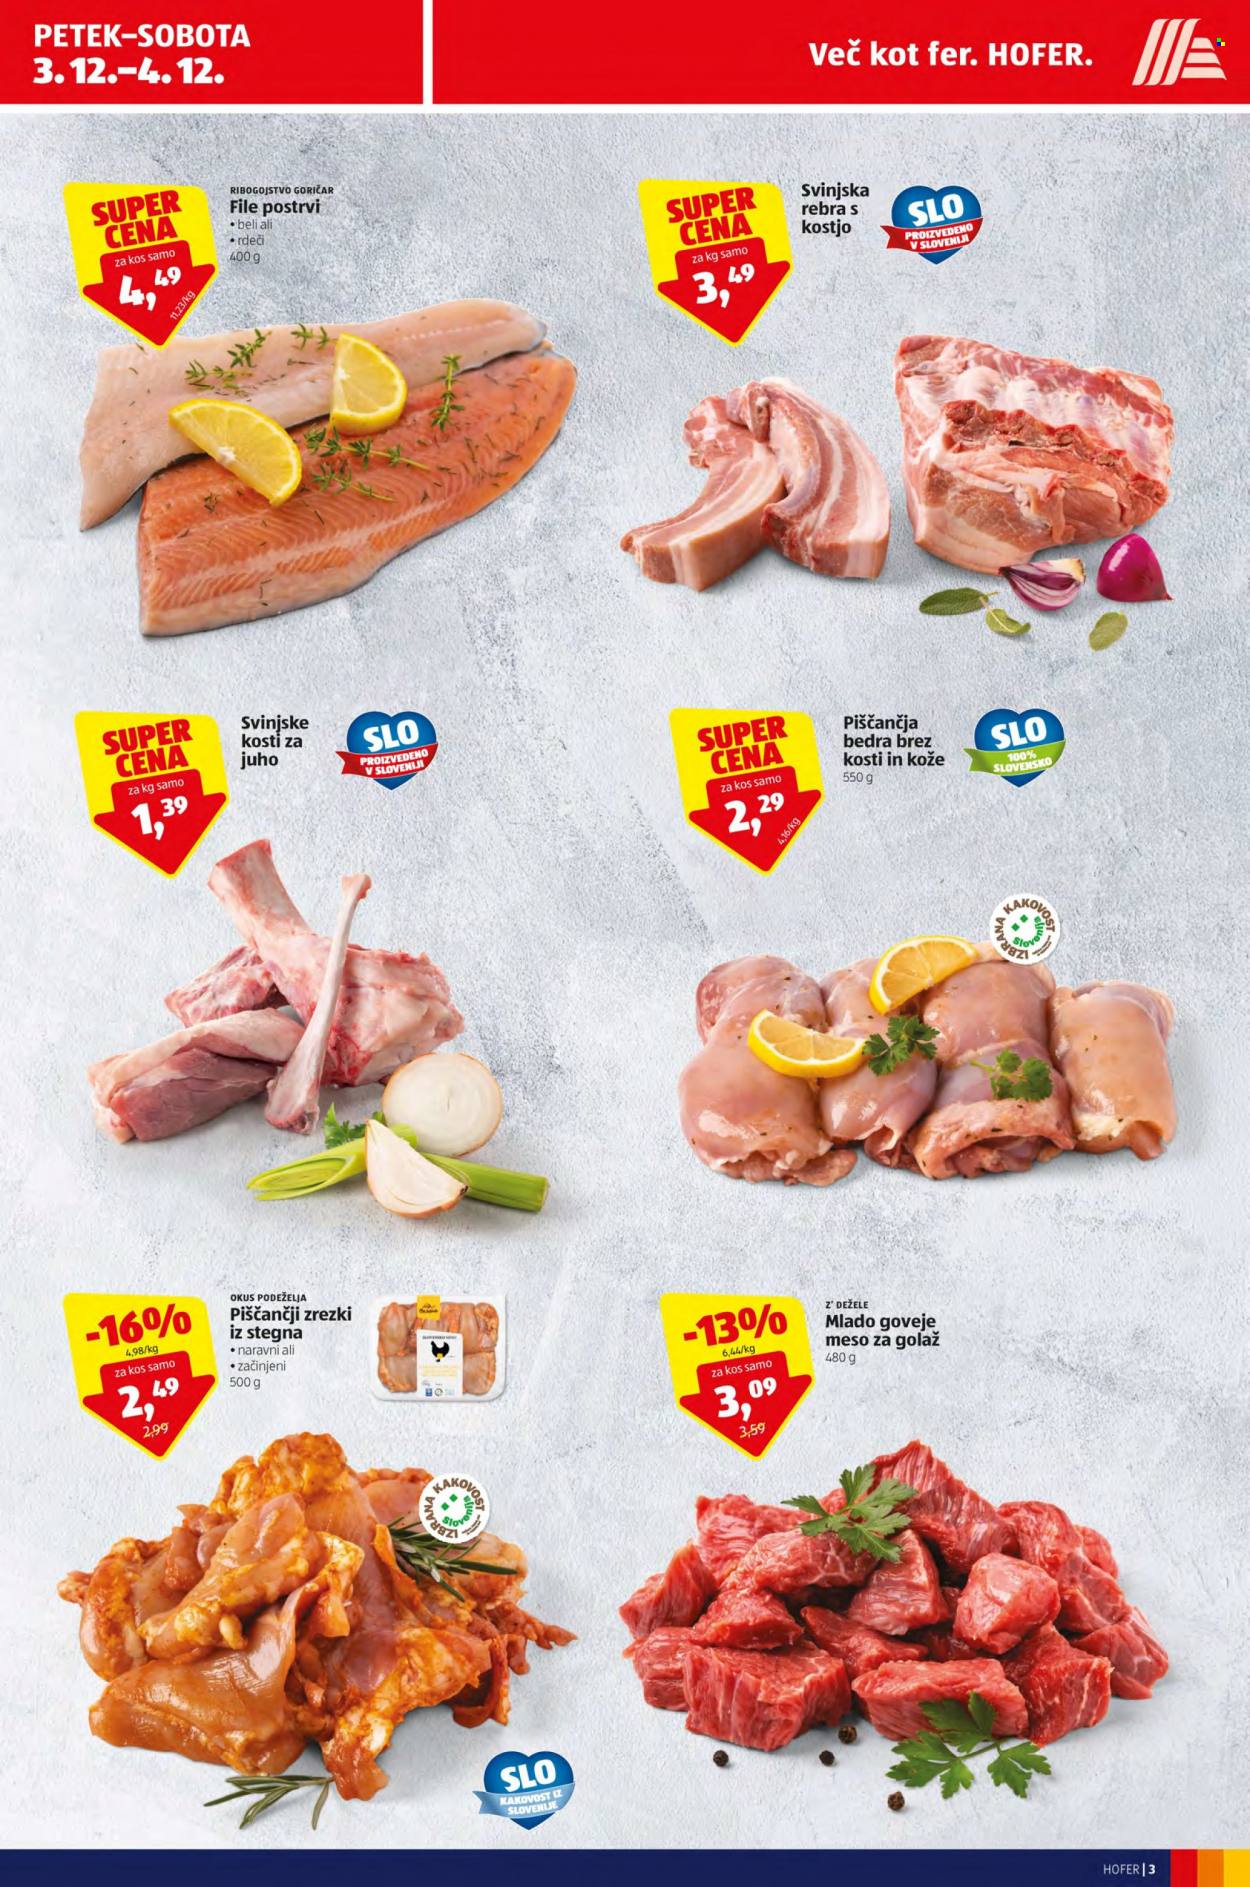 thumbnail - Hofer katalog - 3.12.2021 - 11.12.2021 - Ponudba izdelkov - piščančja bedra, stegno, piščančje meso, goveje meso, mlado goveje meso, rebra, goveje meso za golaž, svinjska rebra, svinjsko meso. Stran 3.